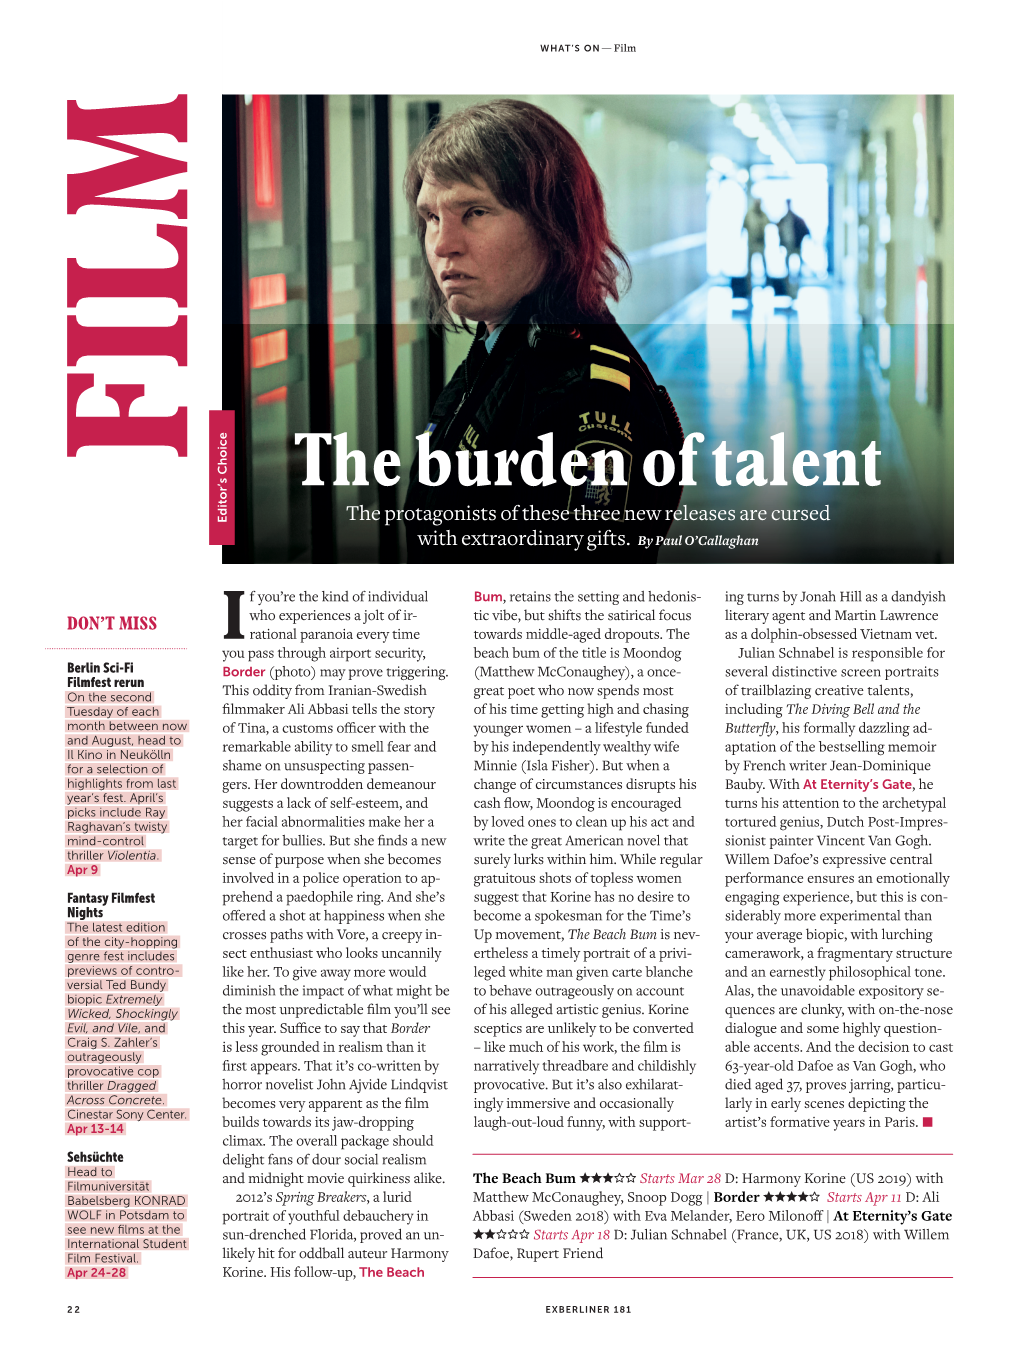 The Burden of Talent